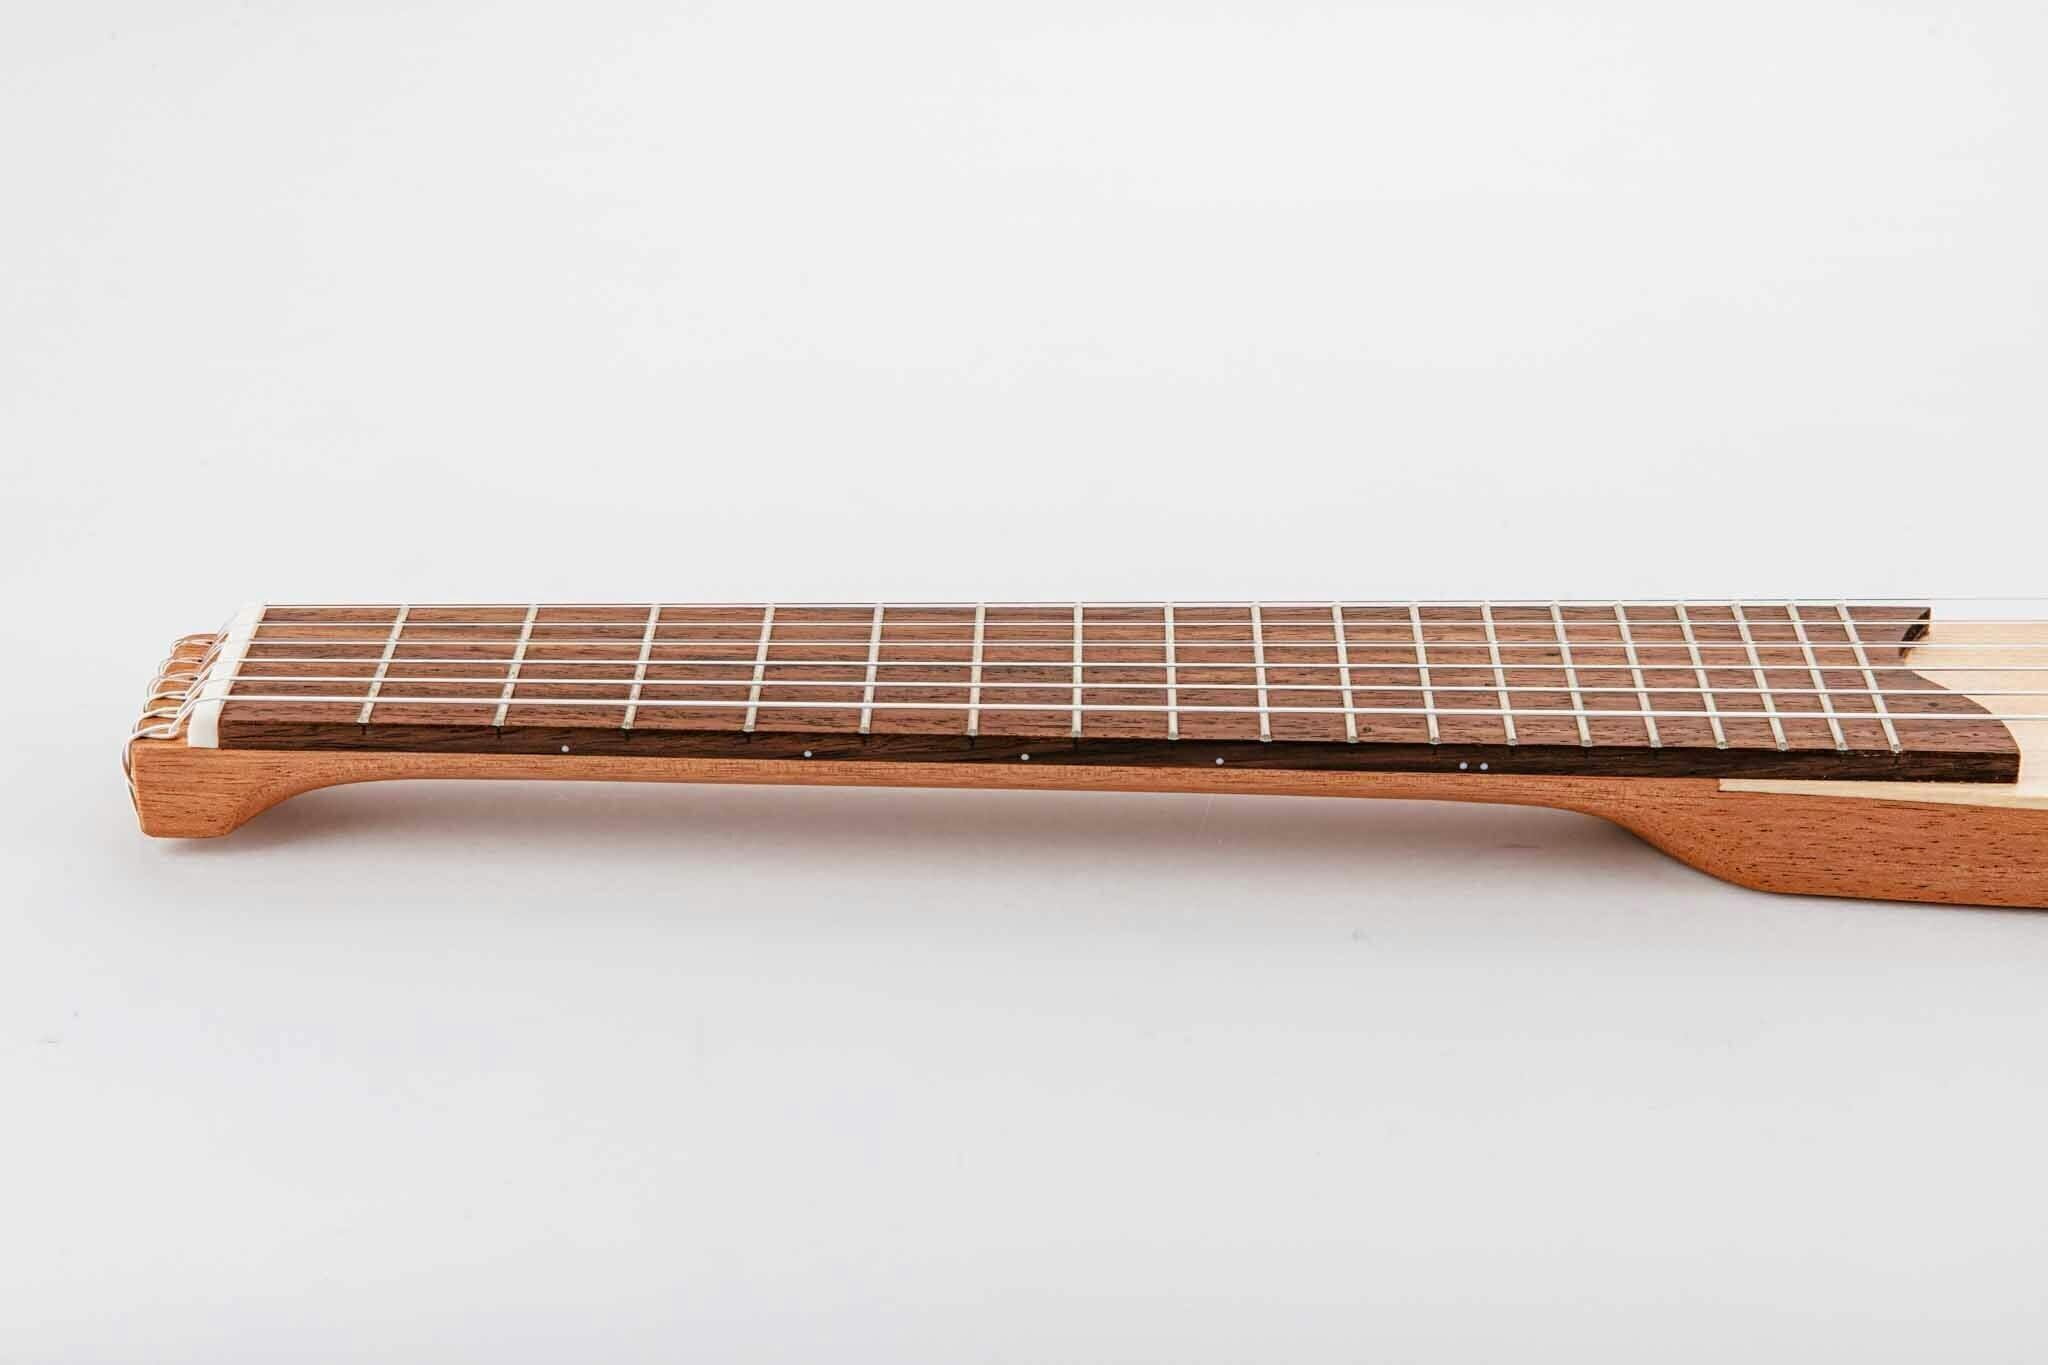 イヤホン一つで自分だけの世界を作り出す自分専用のギター「Klang」